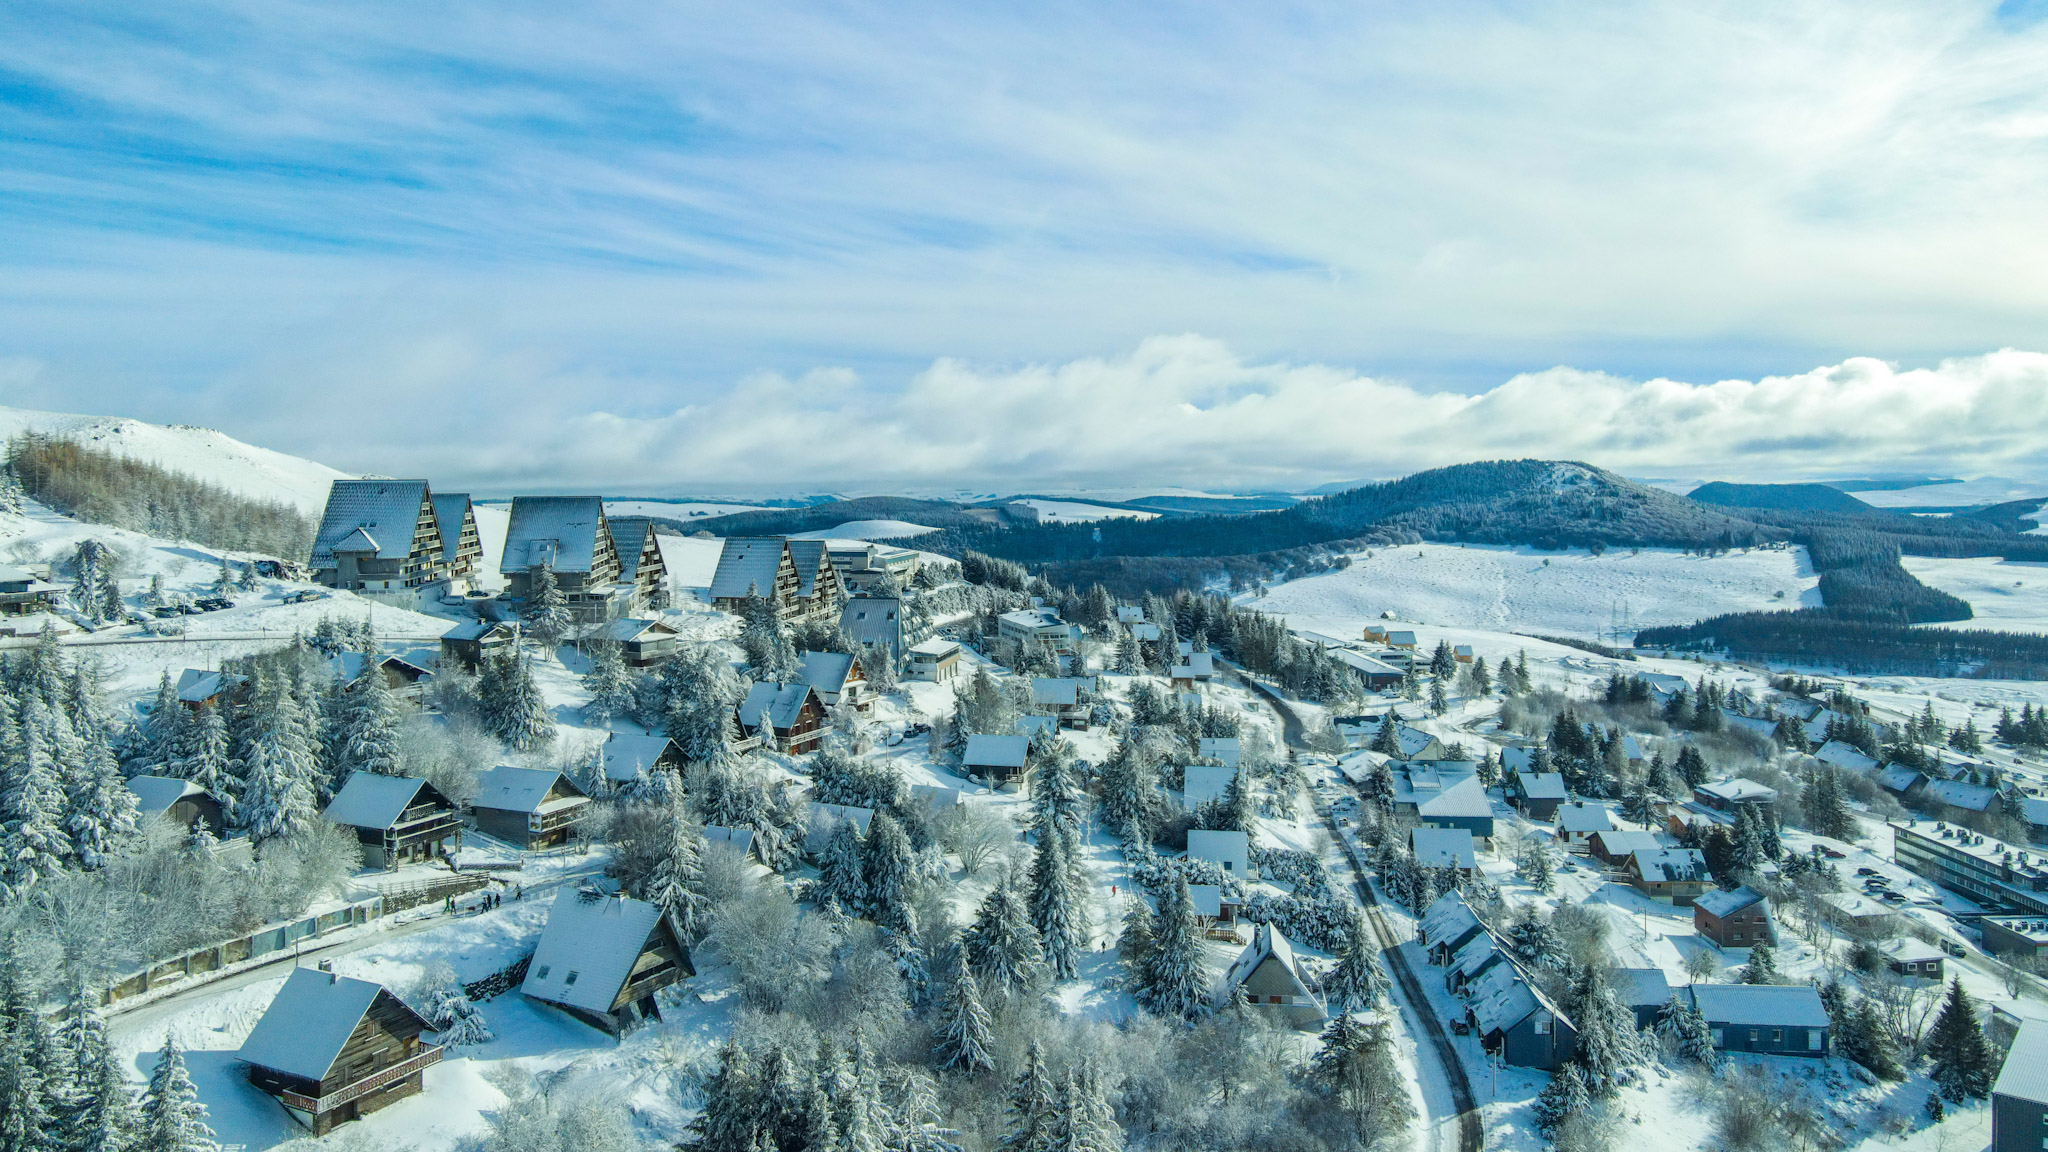 Super Besse vue du ciel, le village de Chalets et les résidences sous la neige